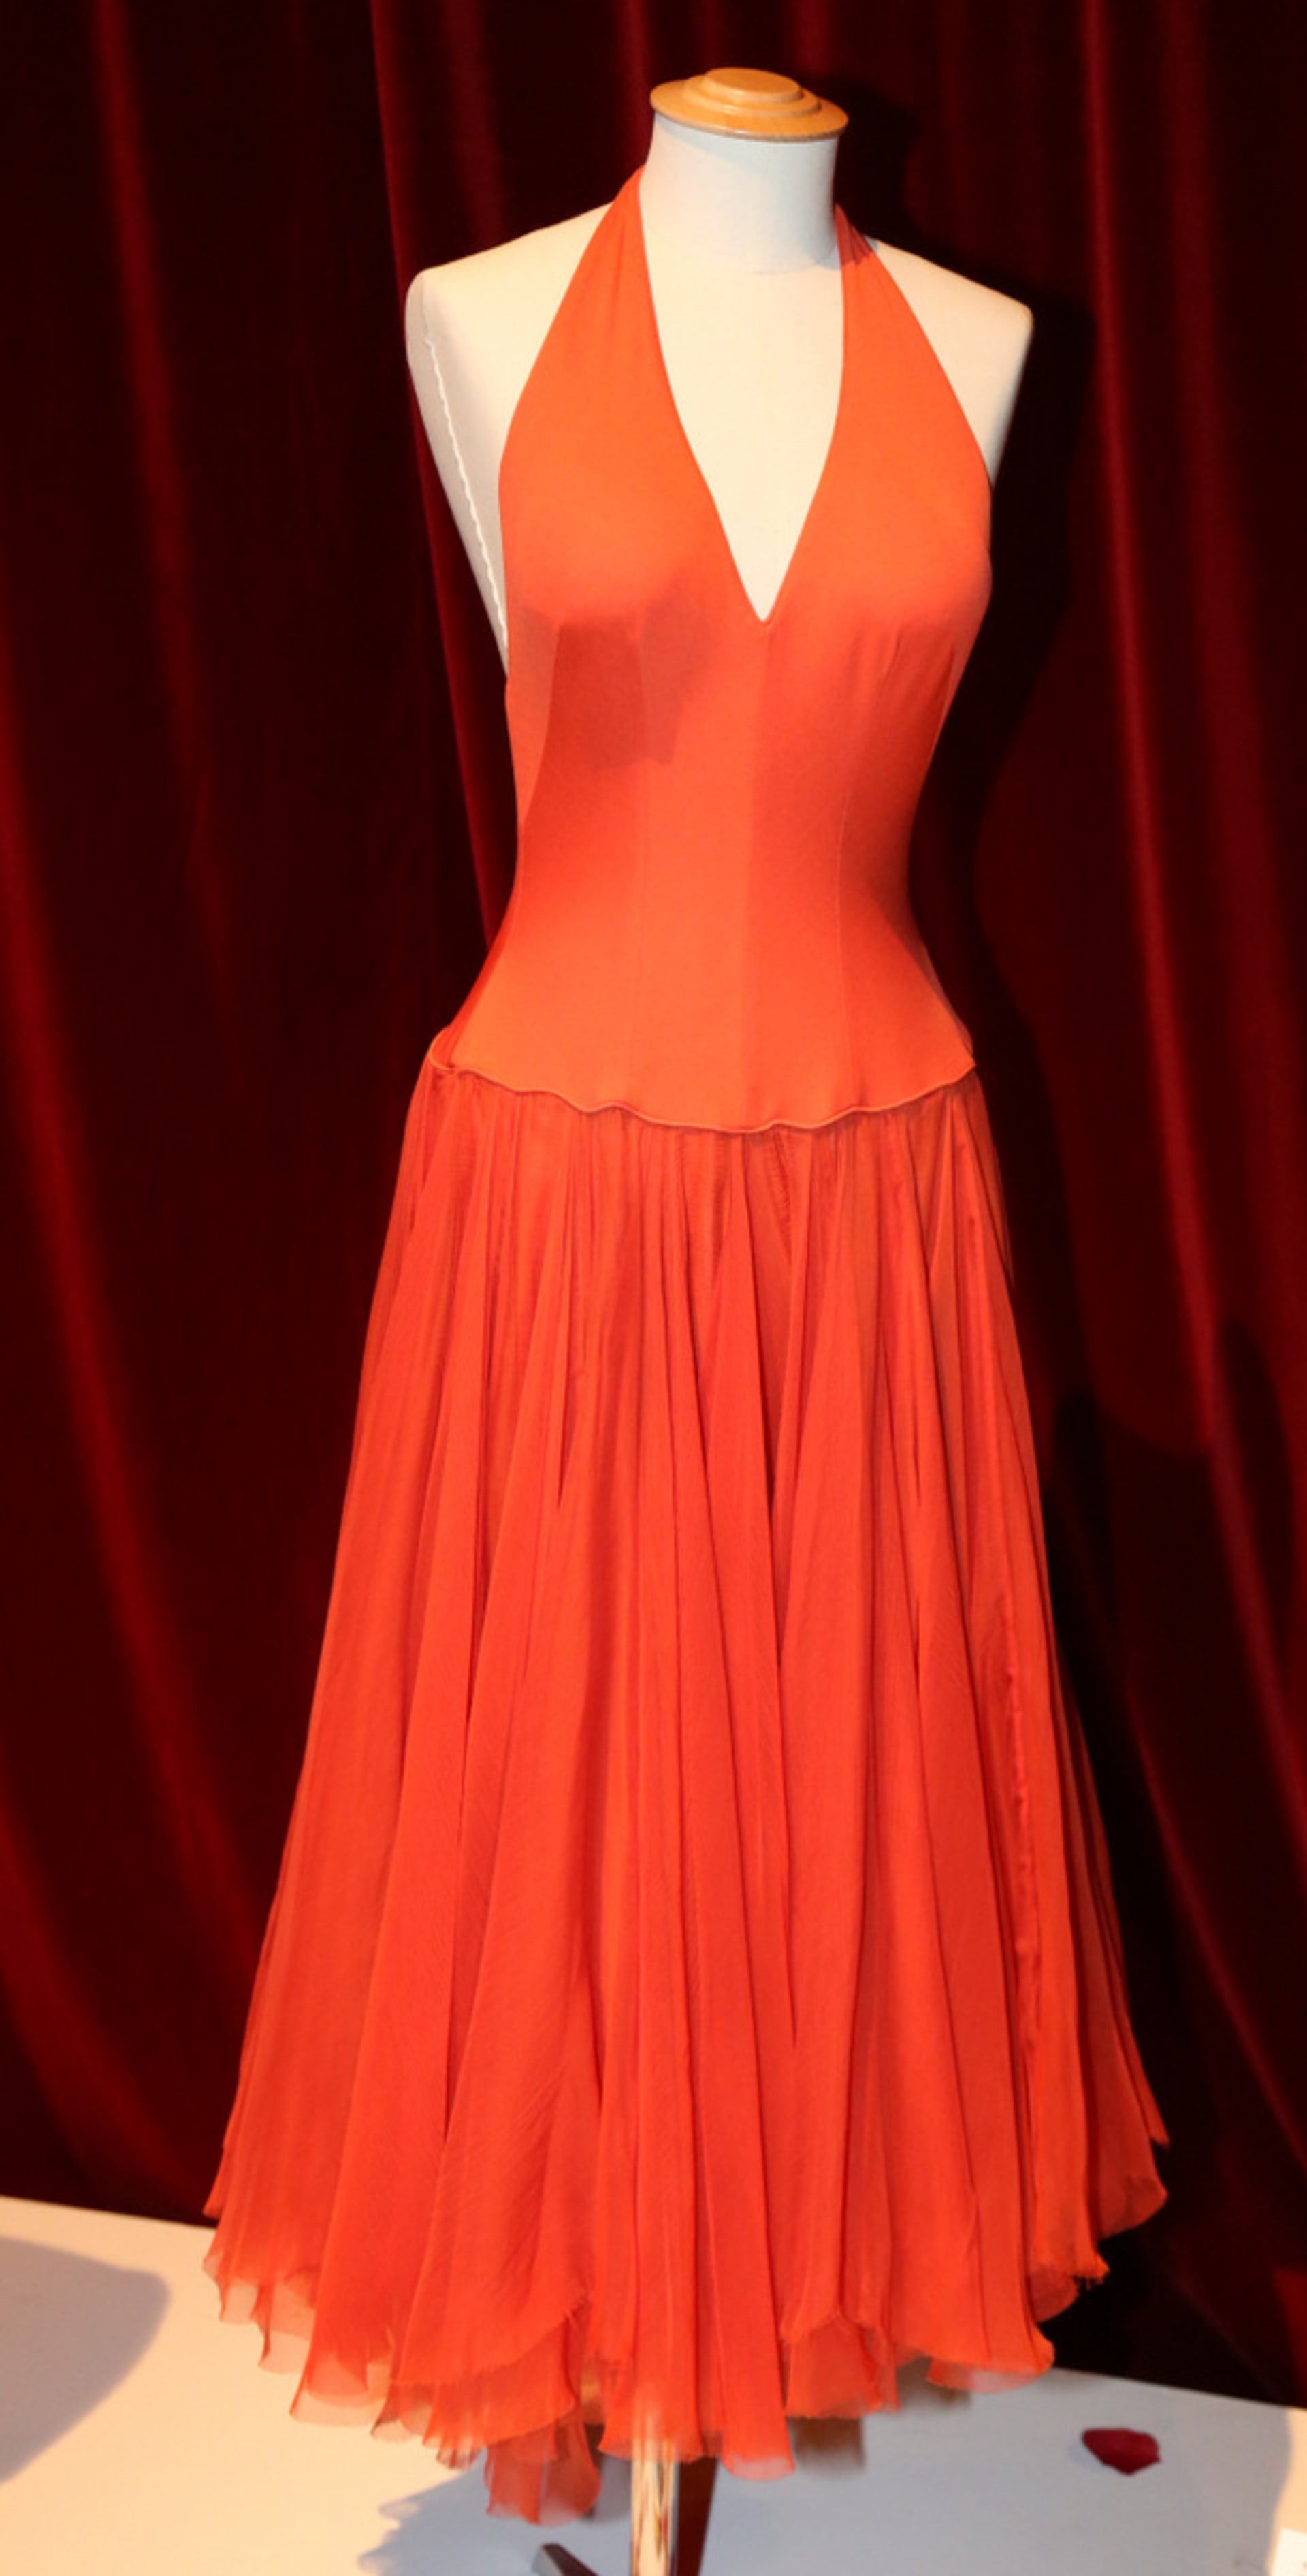 V oranžovočervených šatech Marilyn vyfotili do časopisu Life